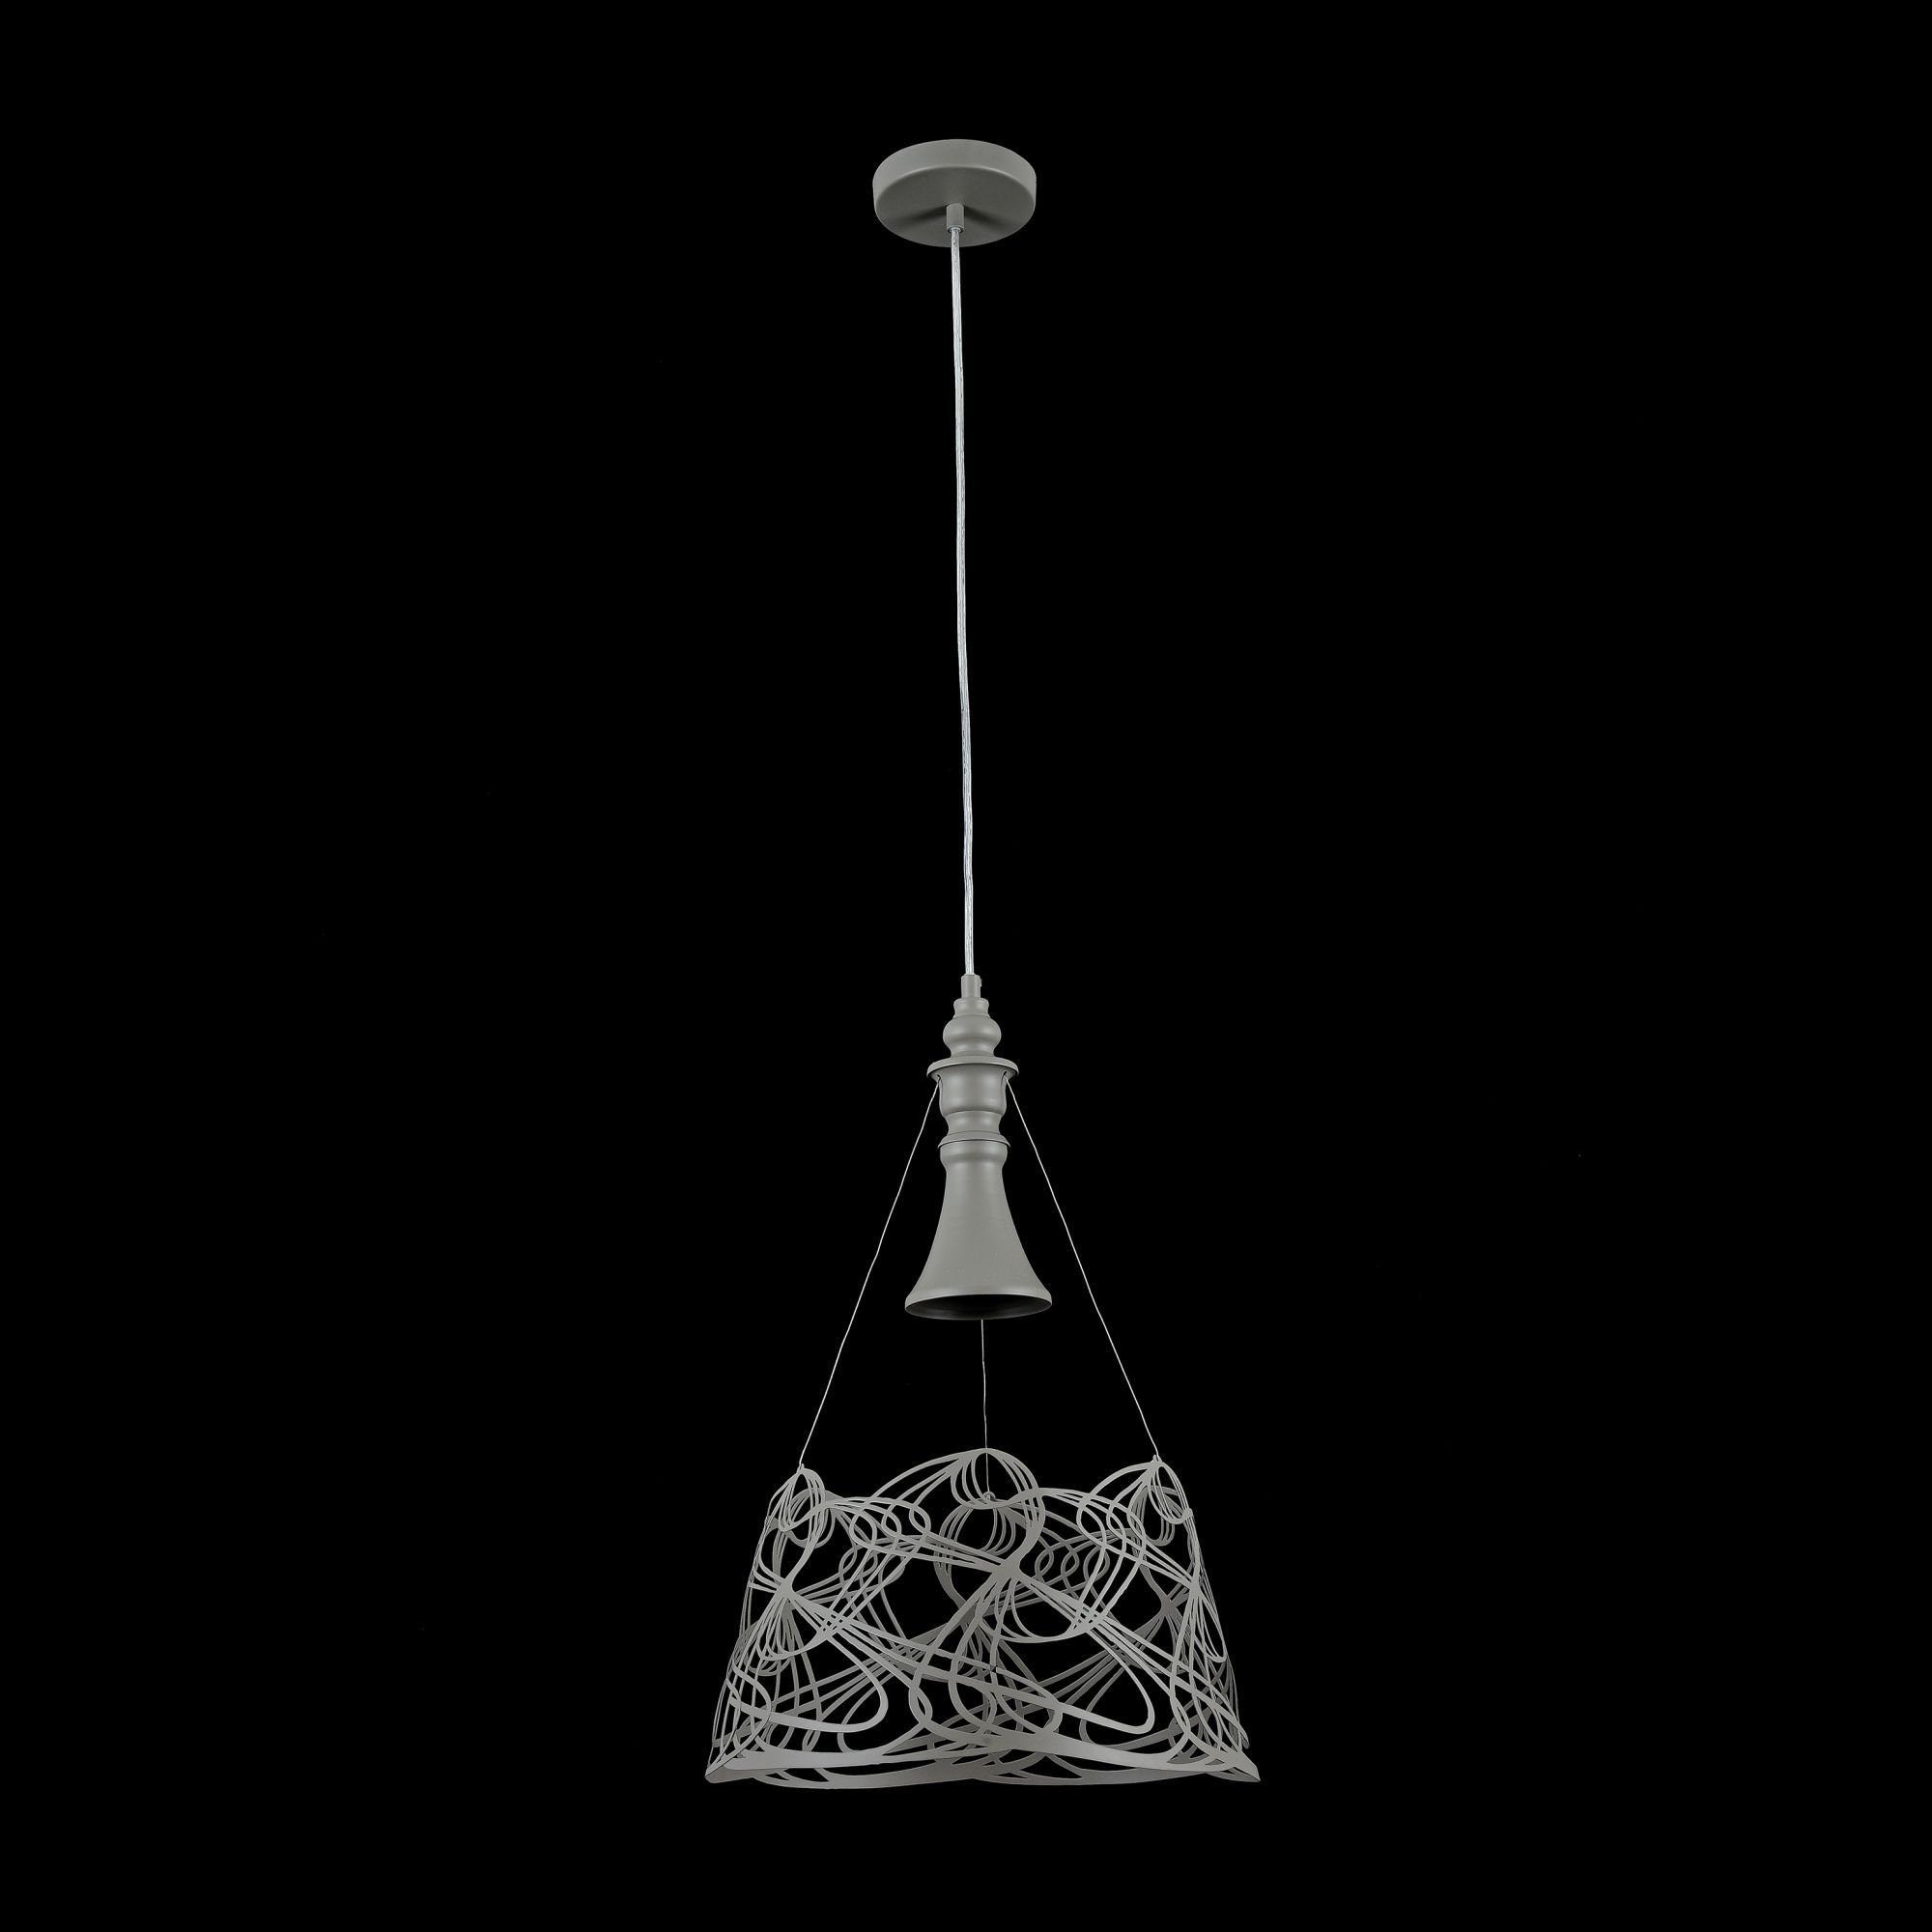 MAYTONI DECORATIVE LIGHTING Pendelleuchte 1 Raumobjekt dekoratives hochwertige Elva Design Leuchtmittel, Lampe 35x50x35 & cm, ohne